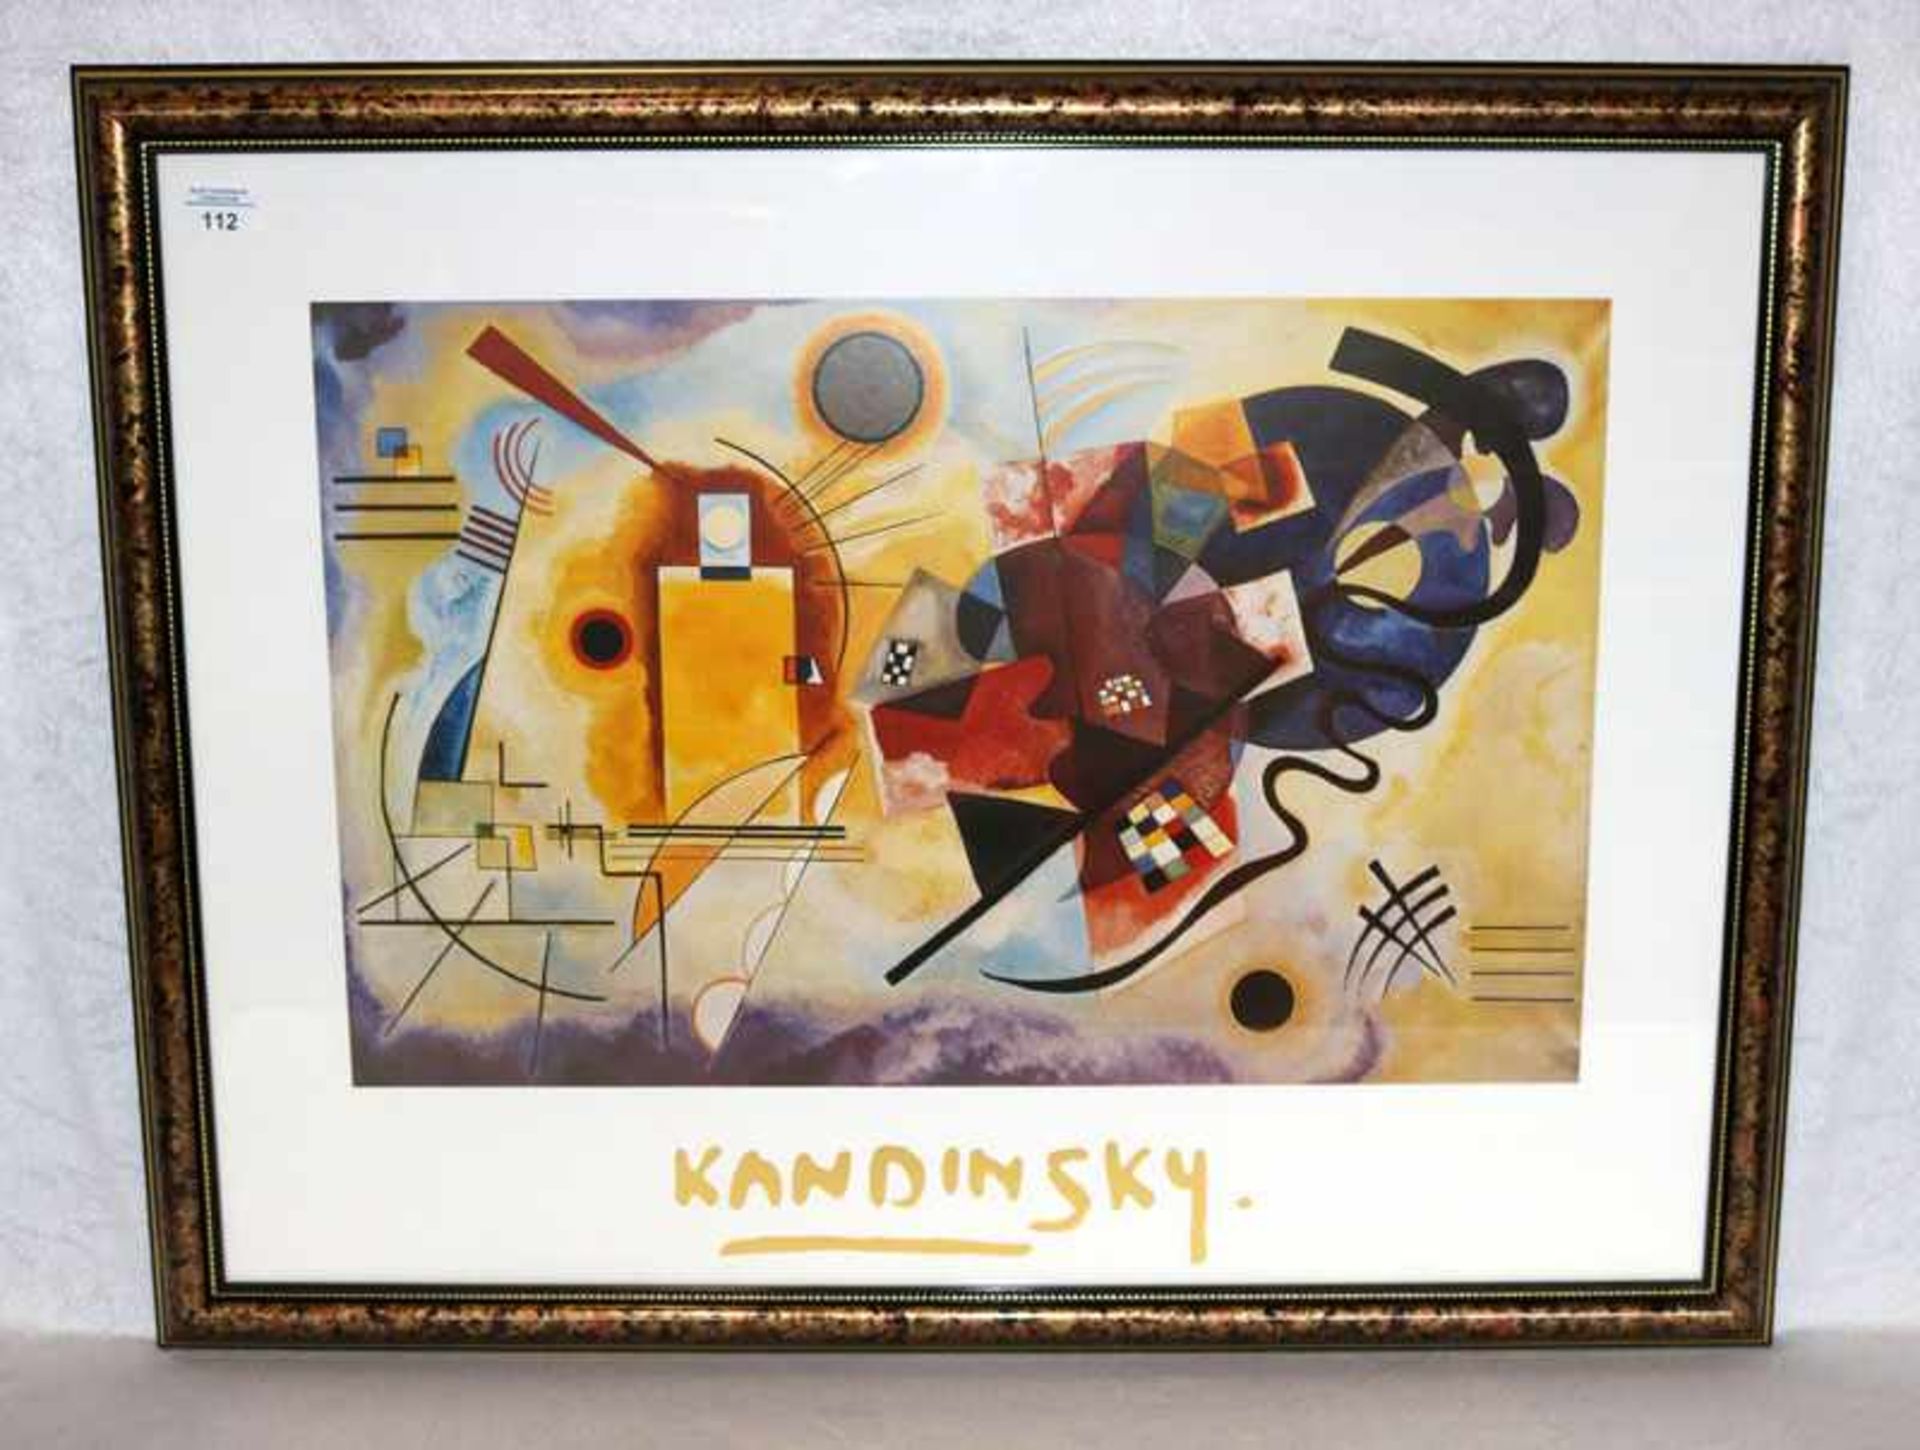 Kunstdruck nach Kandinsky, schön unter Glas gerahmt, Rahmen leicht bestossen, incl. Rahmen 68 cm x